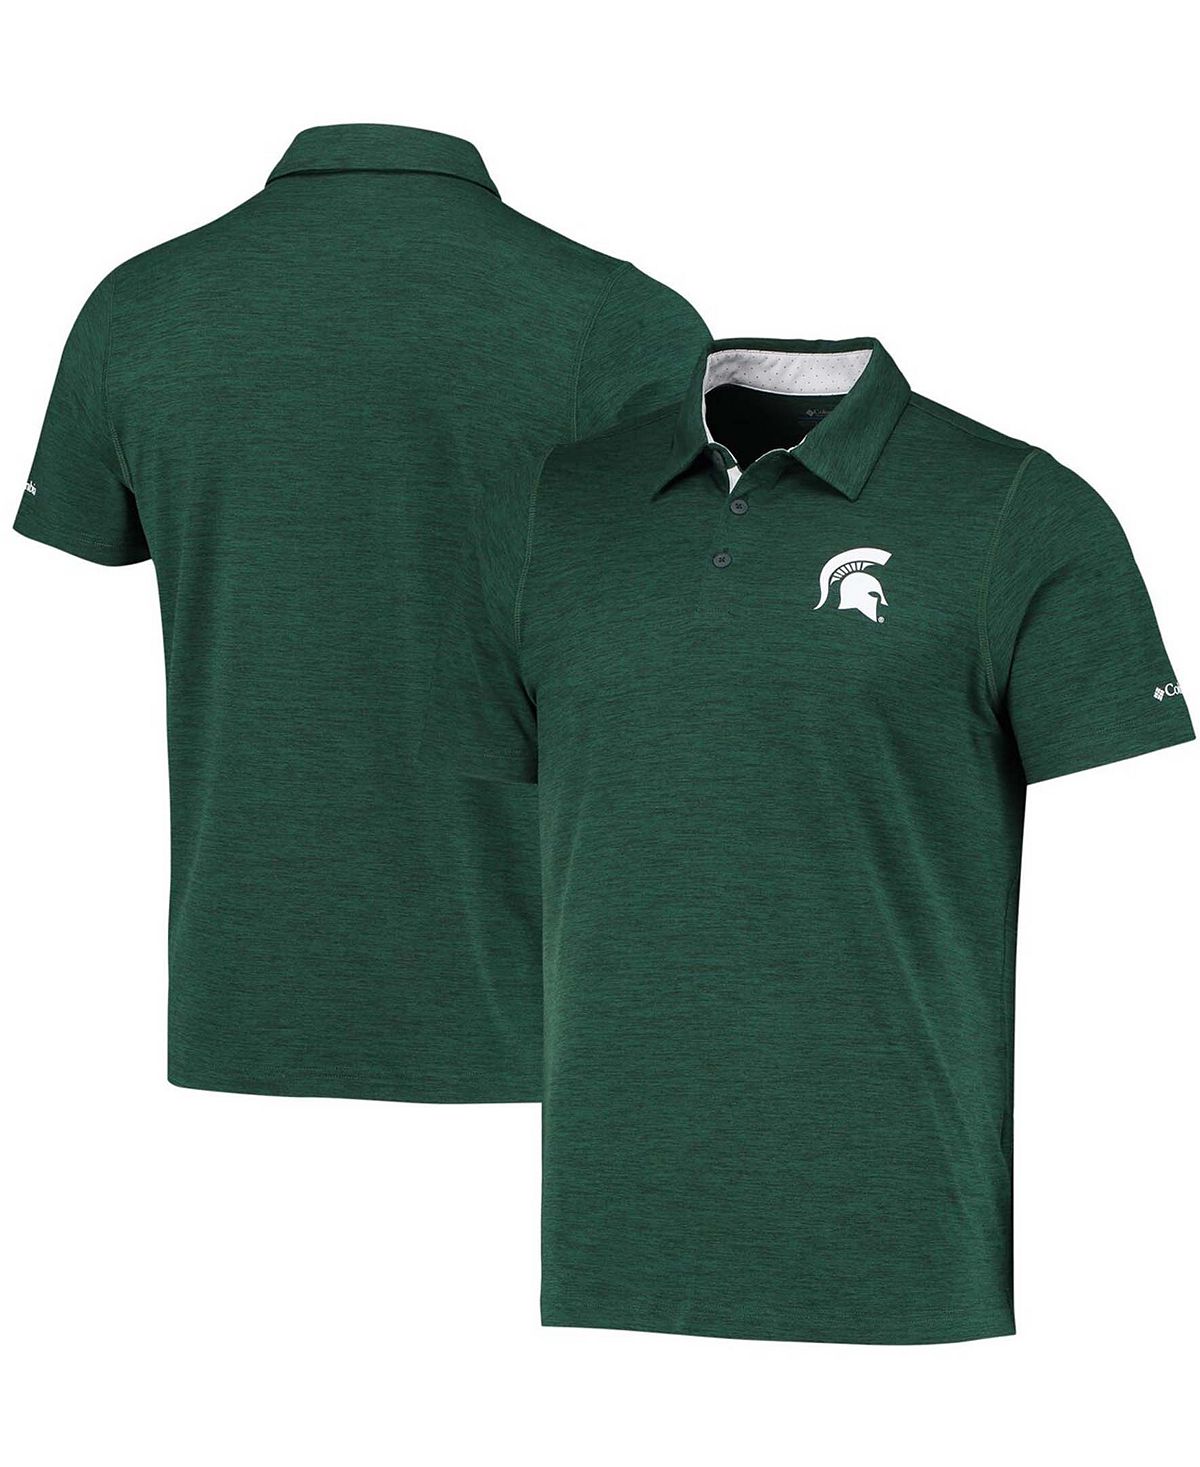 Мужская зеленая рубашка-поло омни-оттенка Michigan State Spartans Tech Trail Space Dye Columbia рубашка поло coolpodarok любовь к теще измеряется километрами